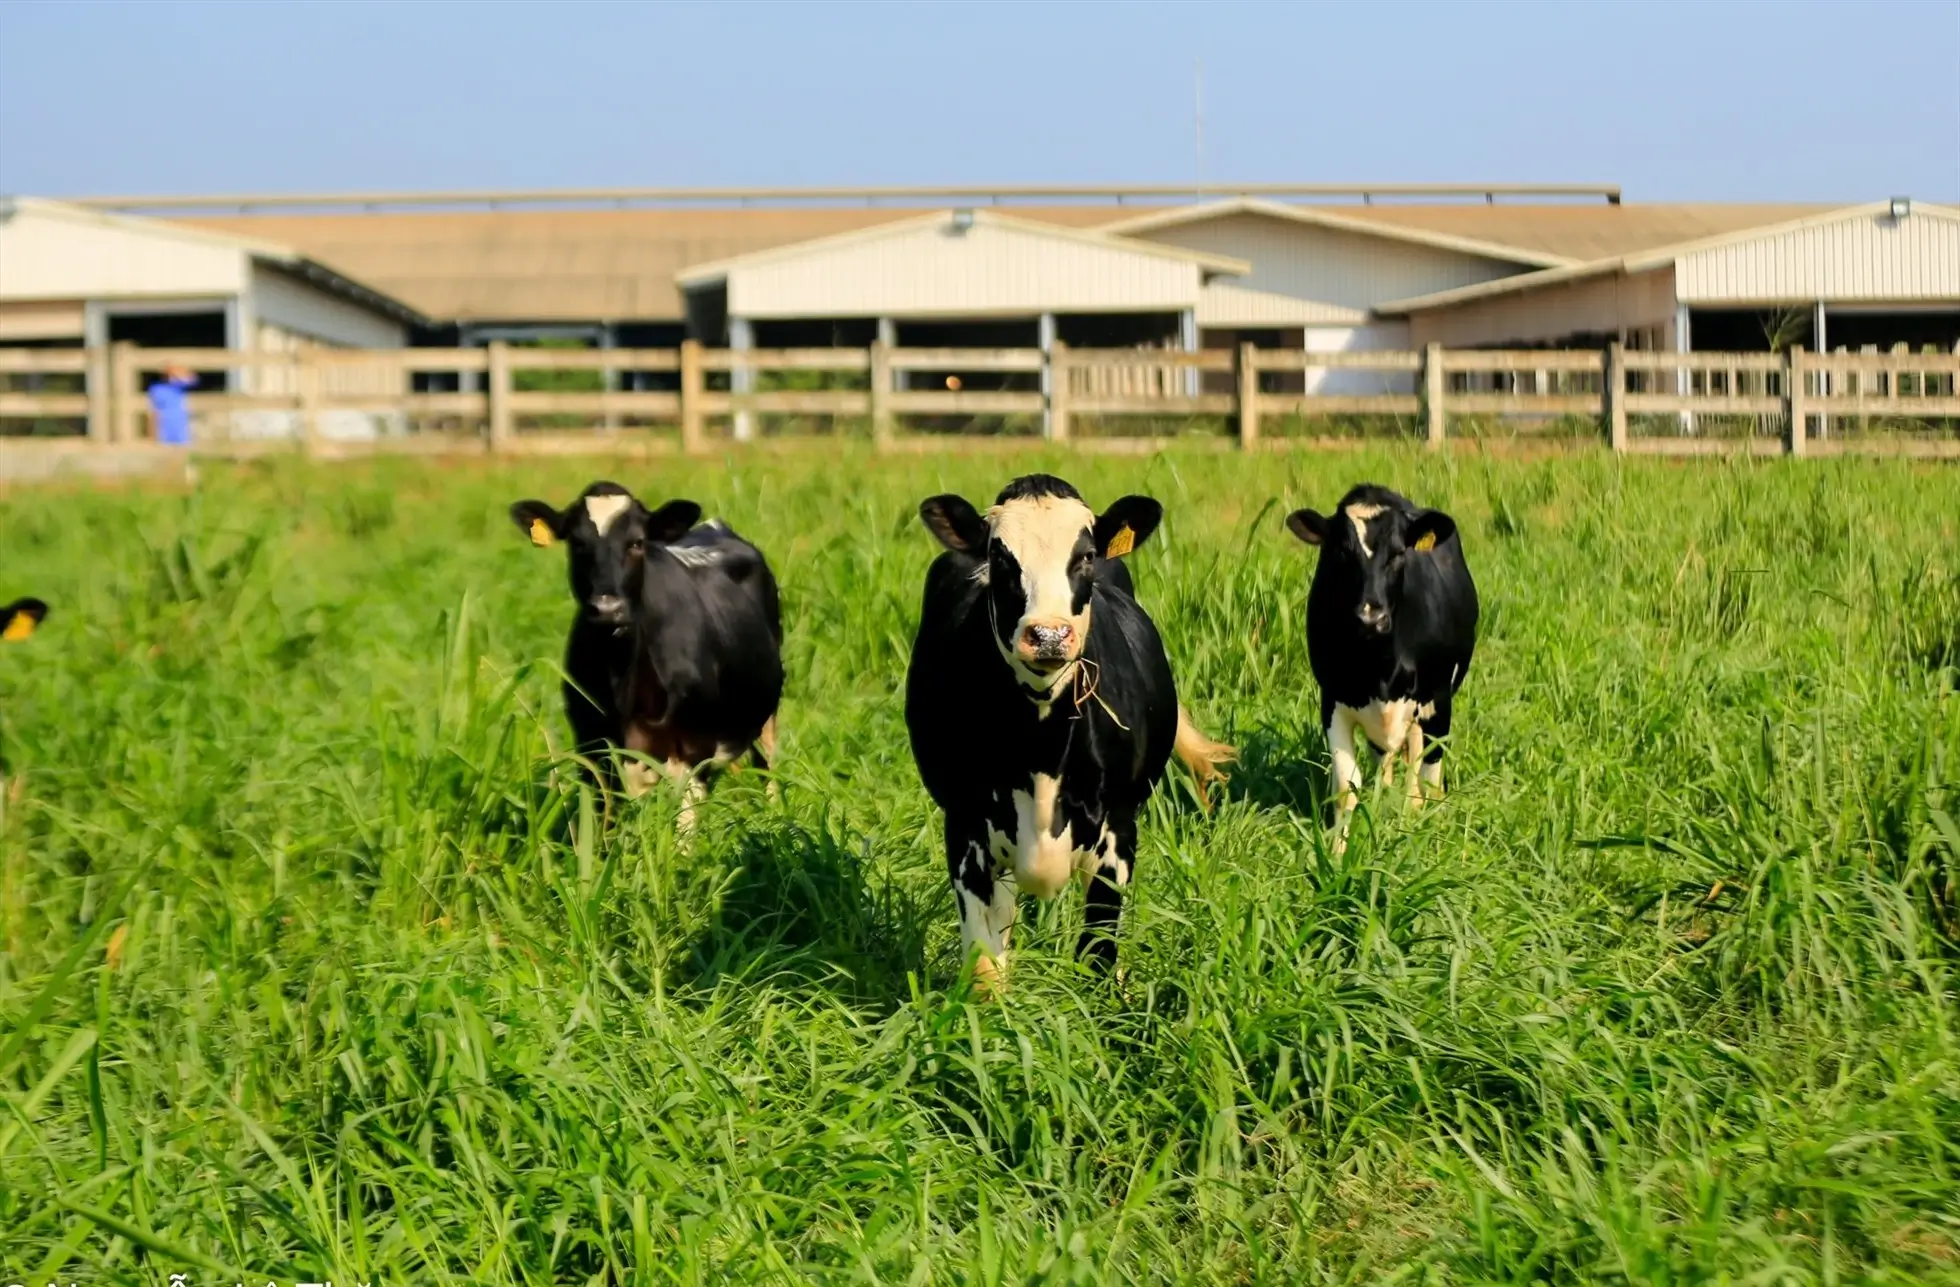 Bò sữa hữu cơ của TH true MILK và những cánh đồng cỏ đáp ứng quy trình trồng trọt hữu cơ châu Âu và Mỹ. Ảnh: Tập đoàn TH.